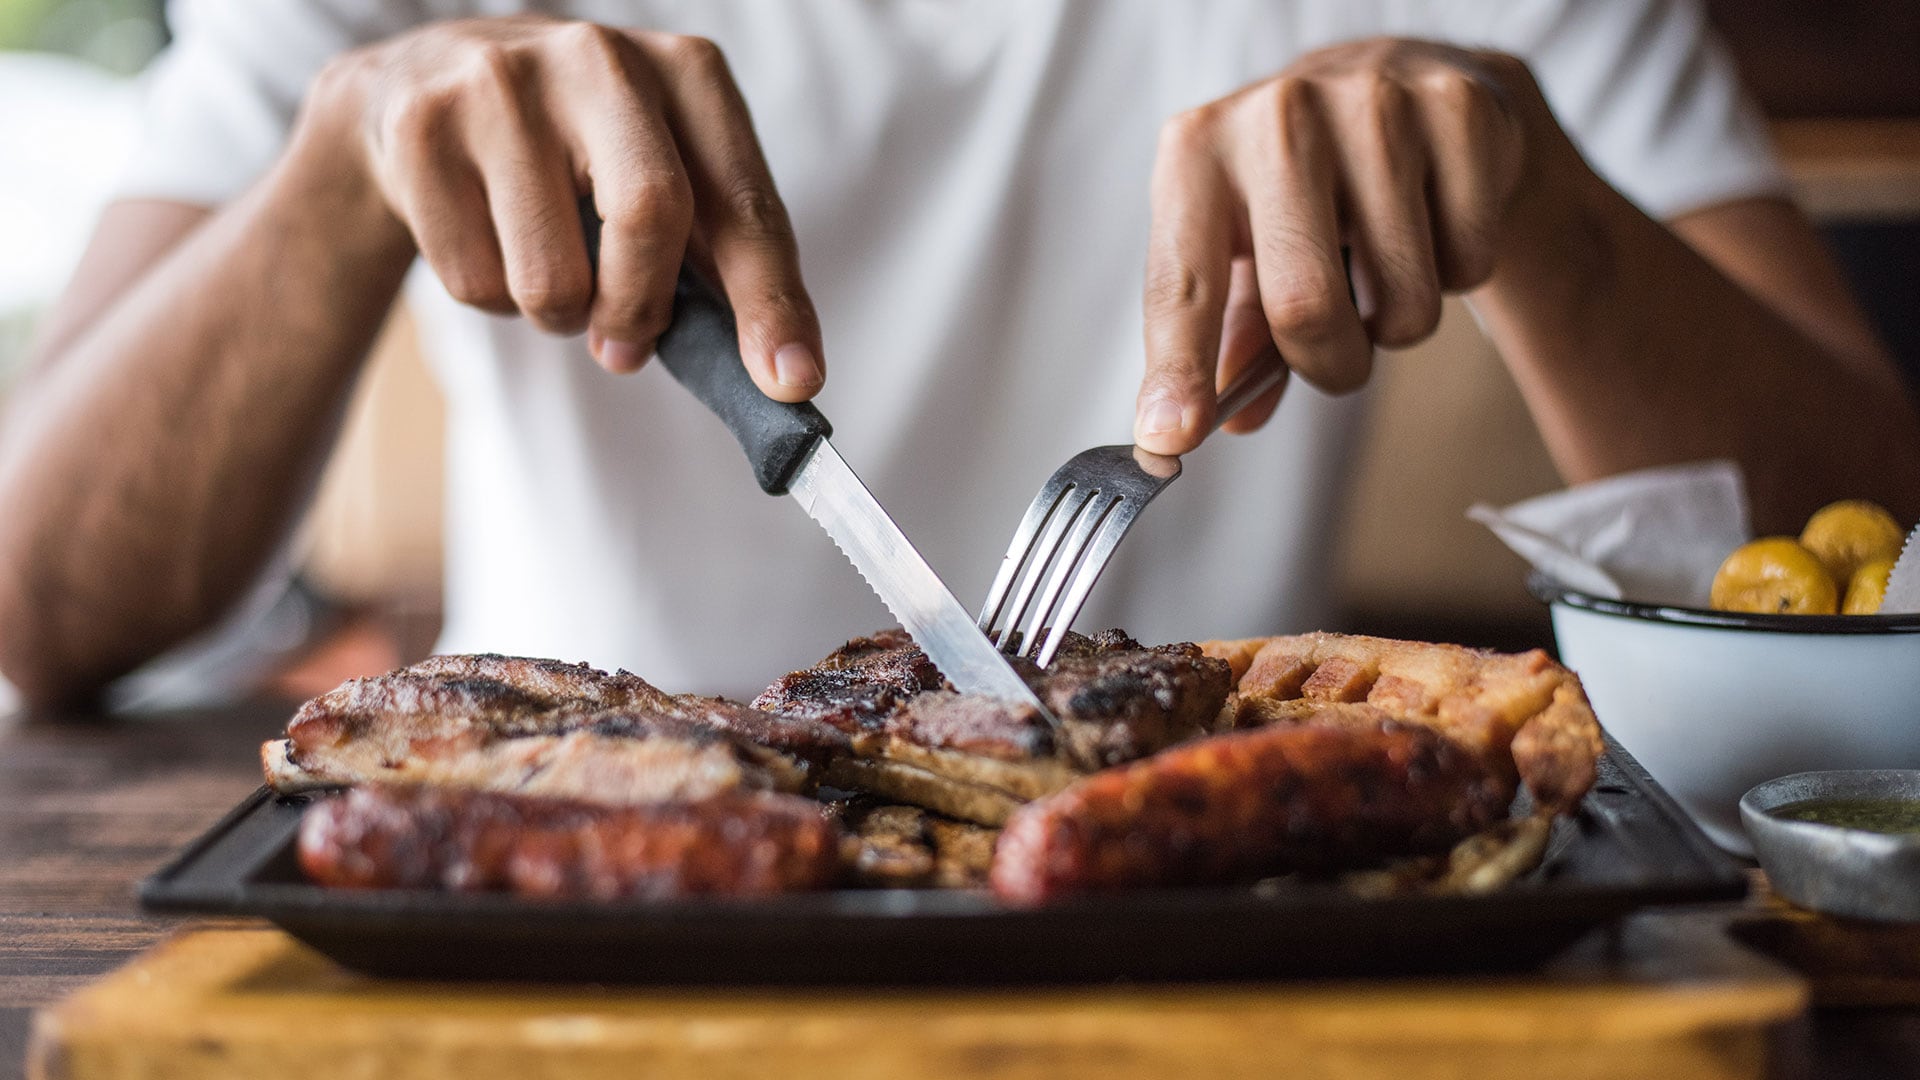 Los hombres tienden a consumir más carne que las mujeres. (Shutterstock)